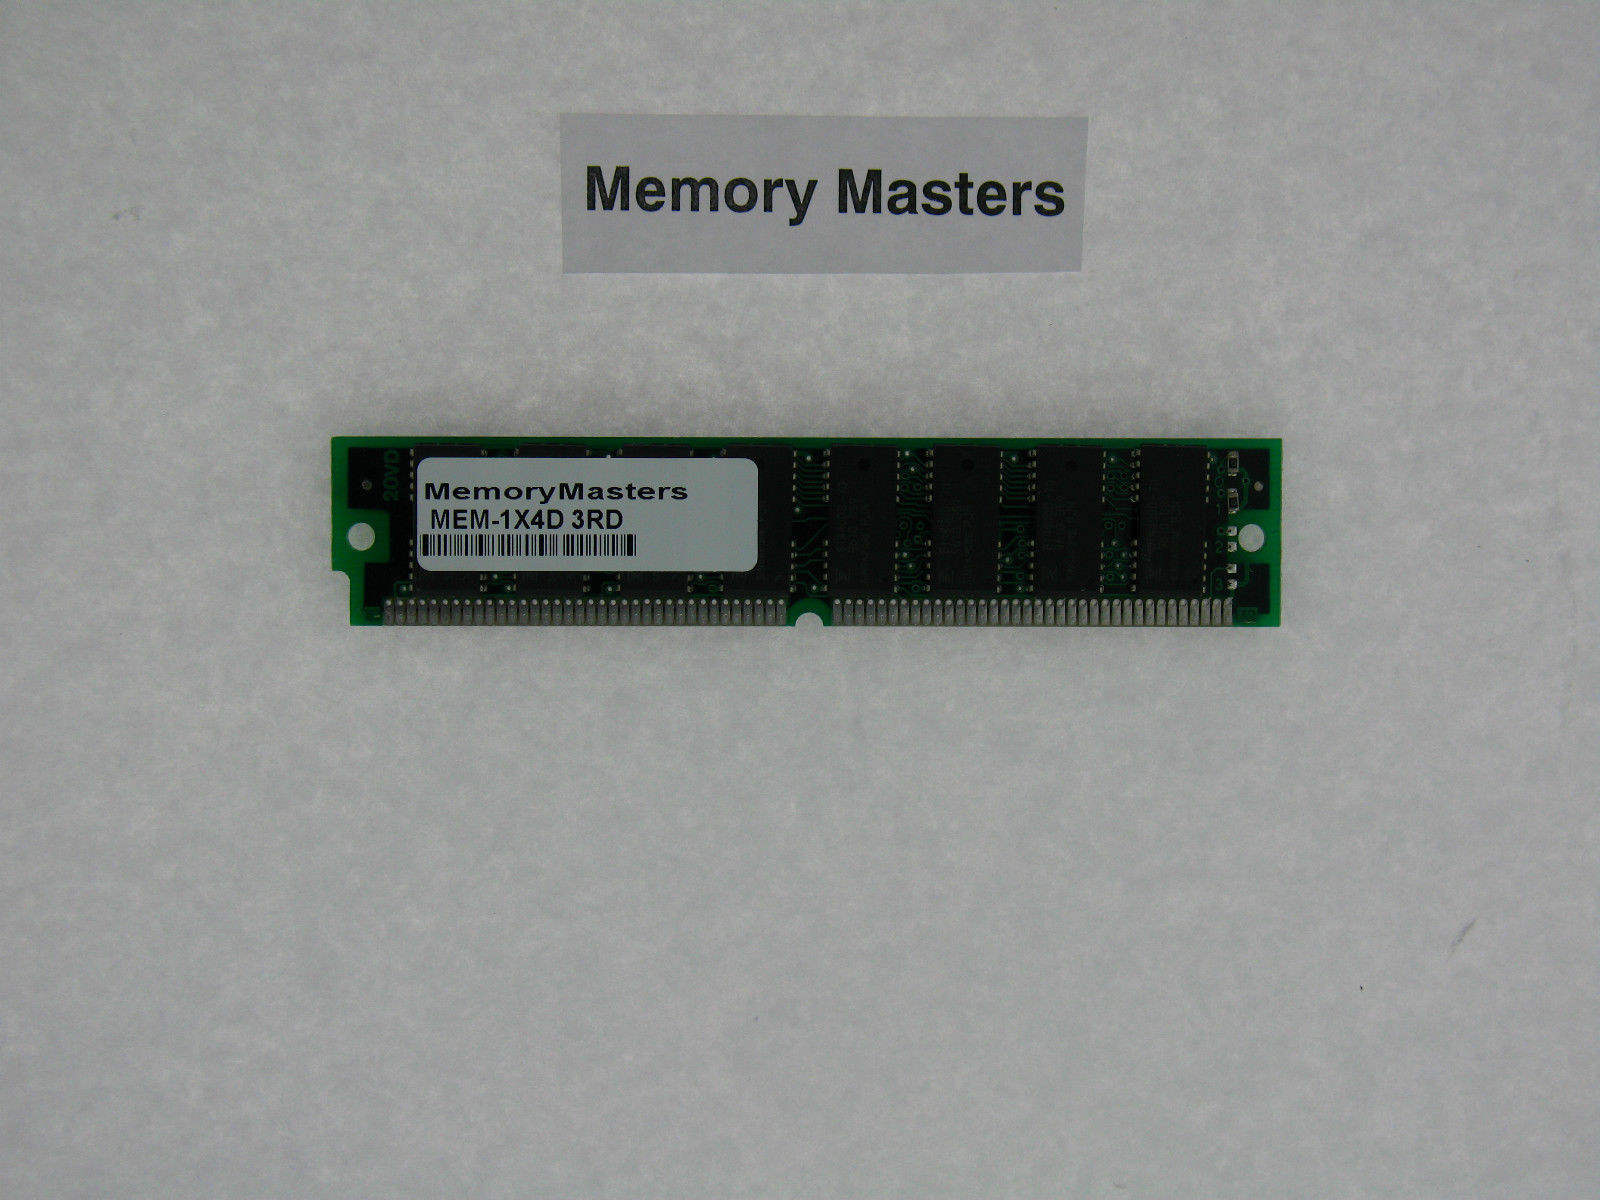 MEM-1X4D 4MB  DRAM Memory for Cisco 2500 - $5.93